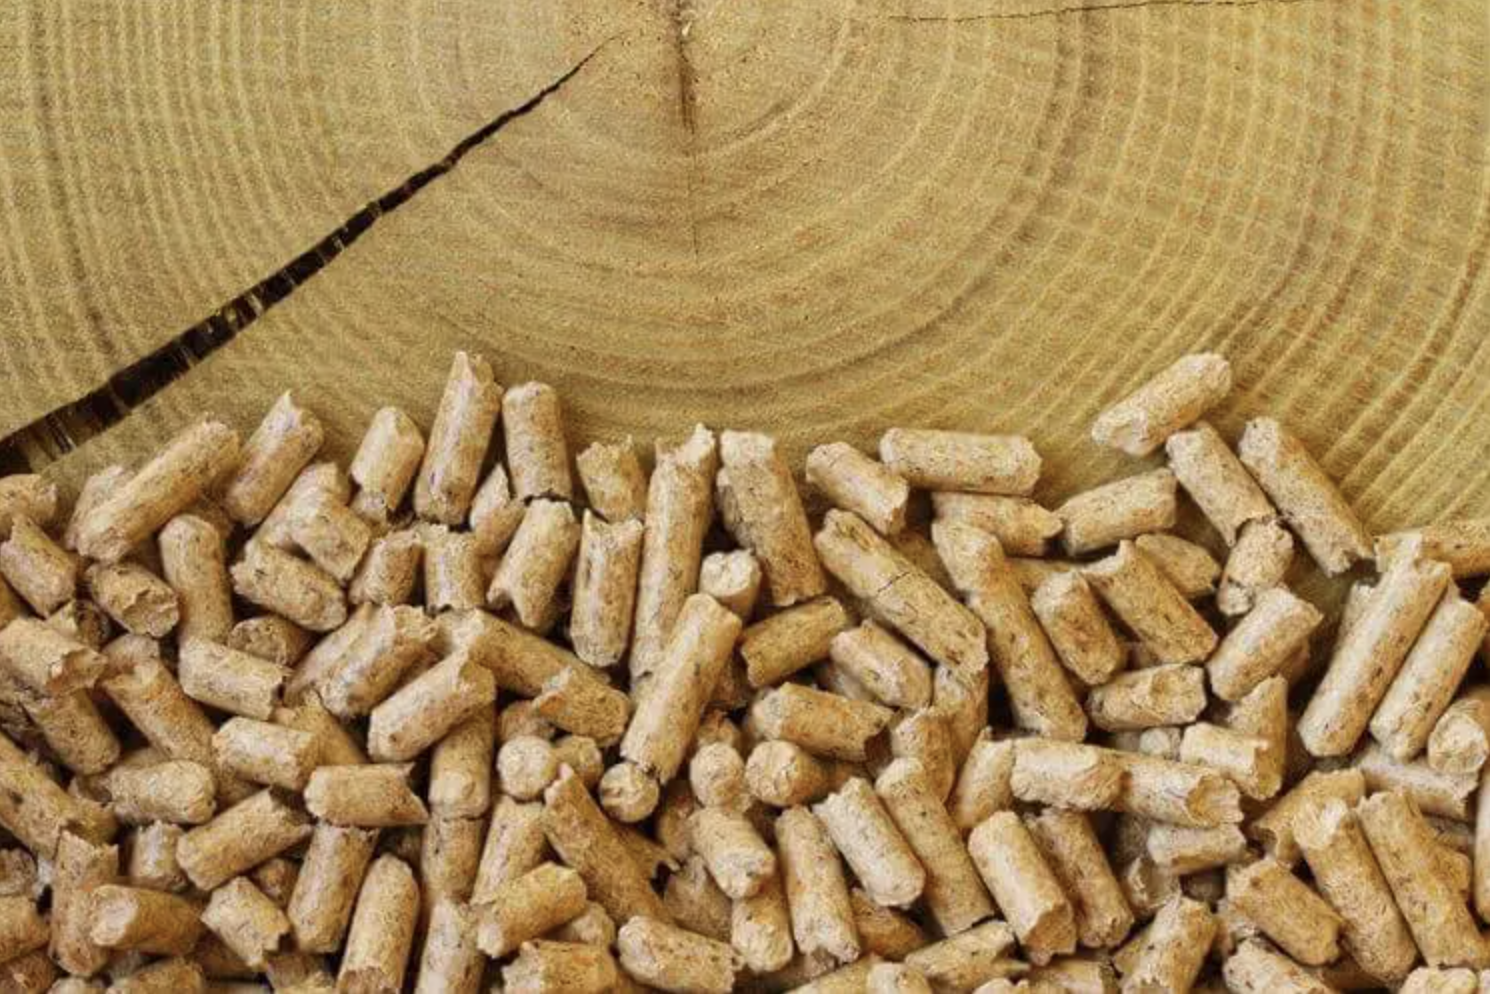 Comment choisir ses granulés de bois ? Les normes et les